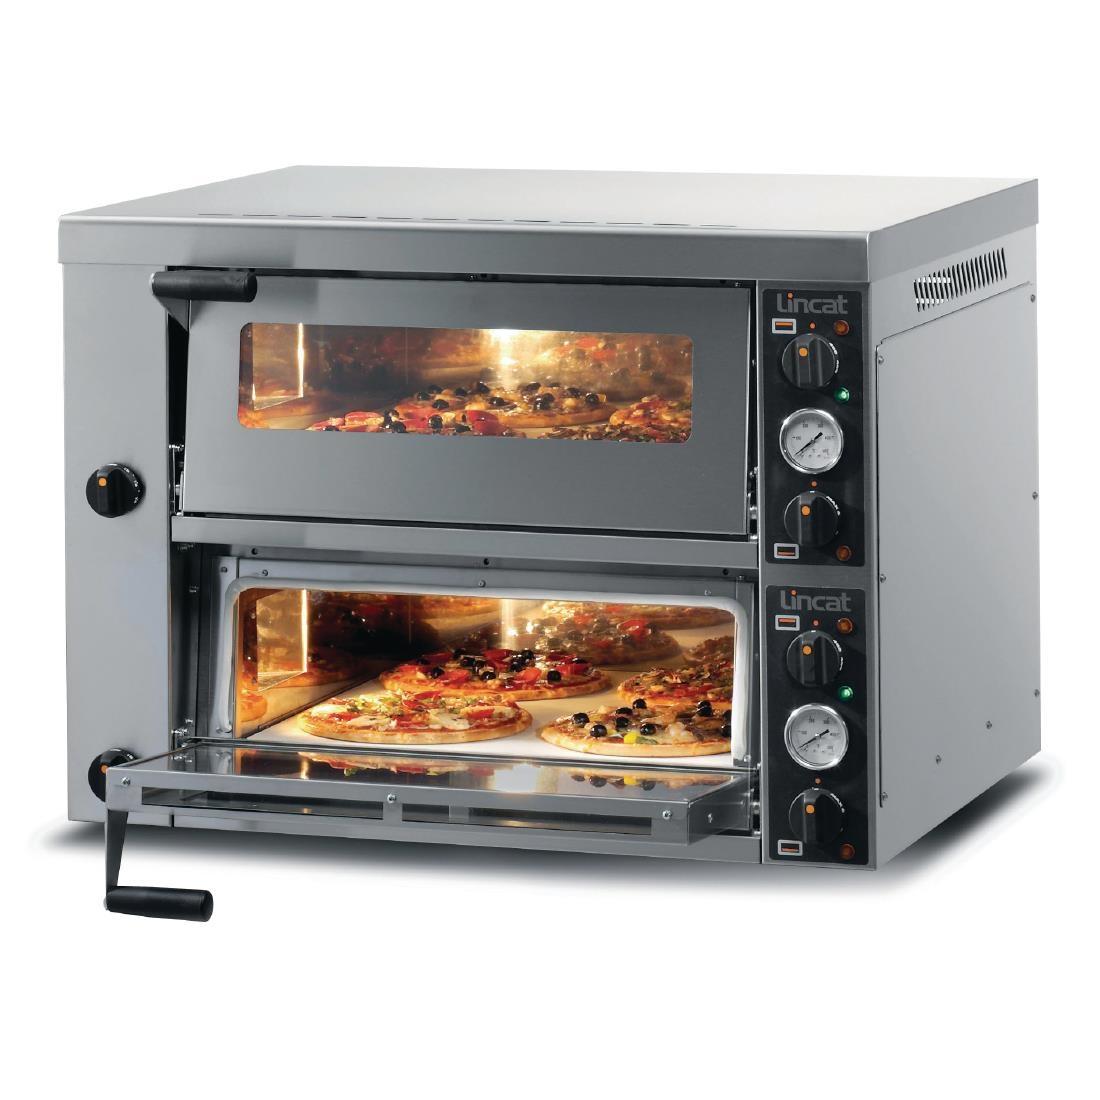 Lincat Double Deck Pizza Oven PO425-2 - GJ698  - 1